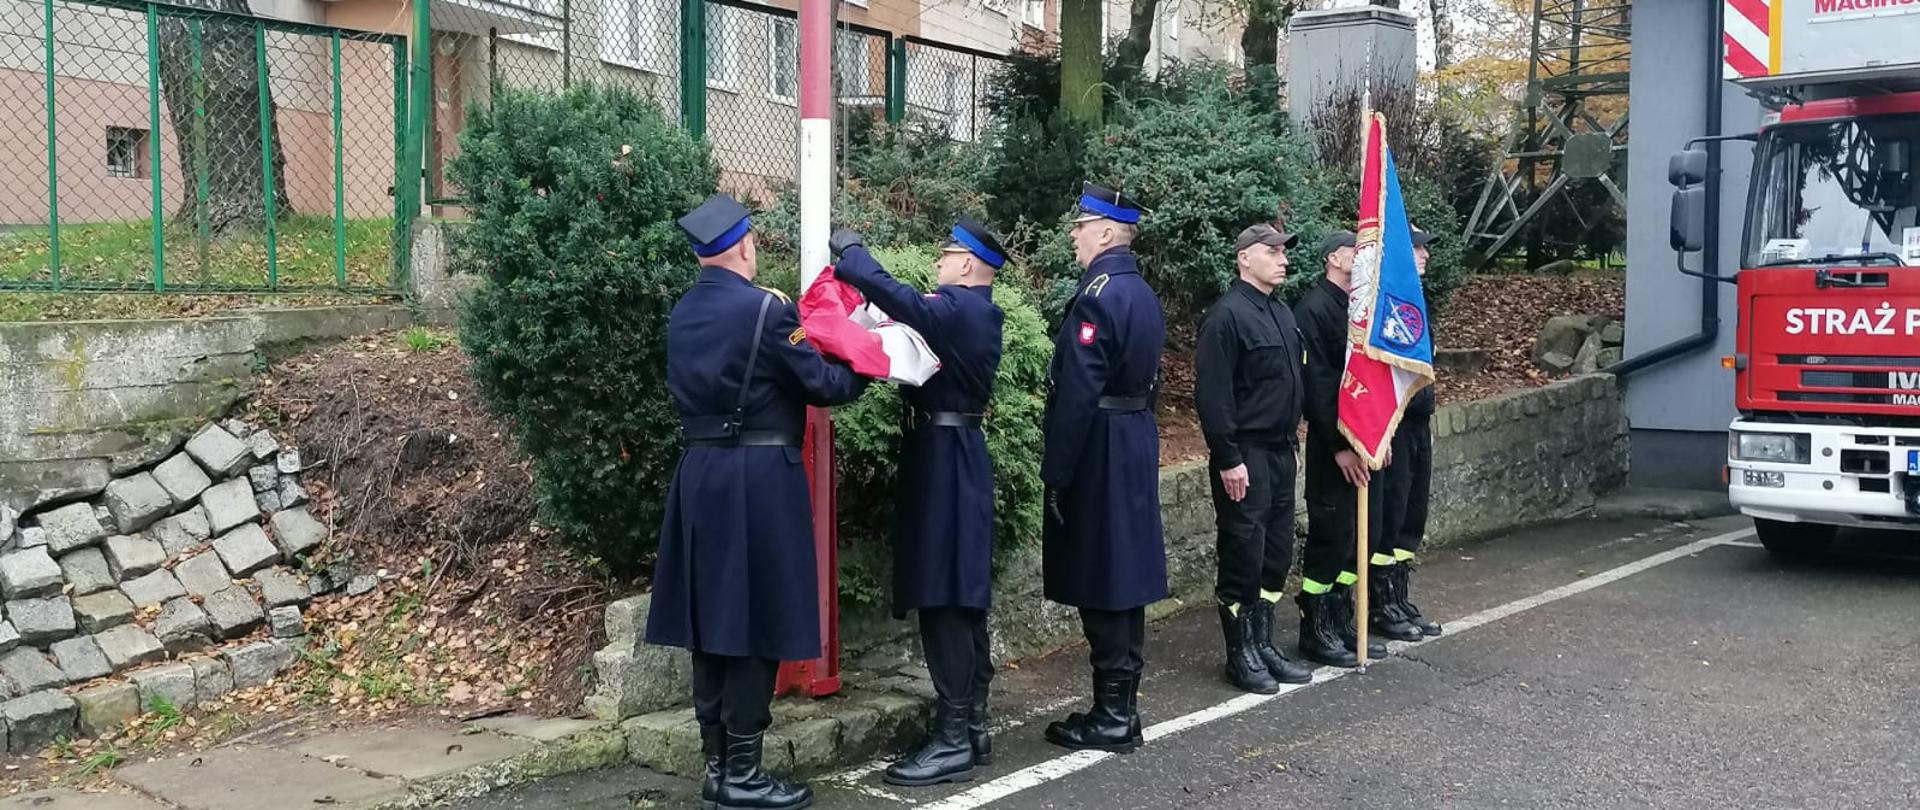 Plac wewnętrzny. Przed biało czerwonym masztem trzech strażaków w mundurach galowych podczepia flagę. Z prawej strony stoi trzech strażaków ze sztandarem. W prawym rogu samochód drabina.